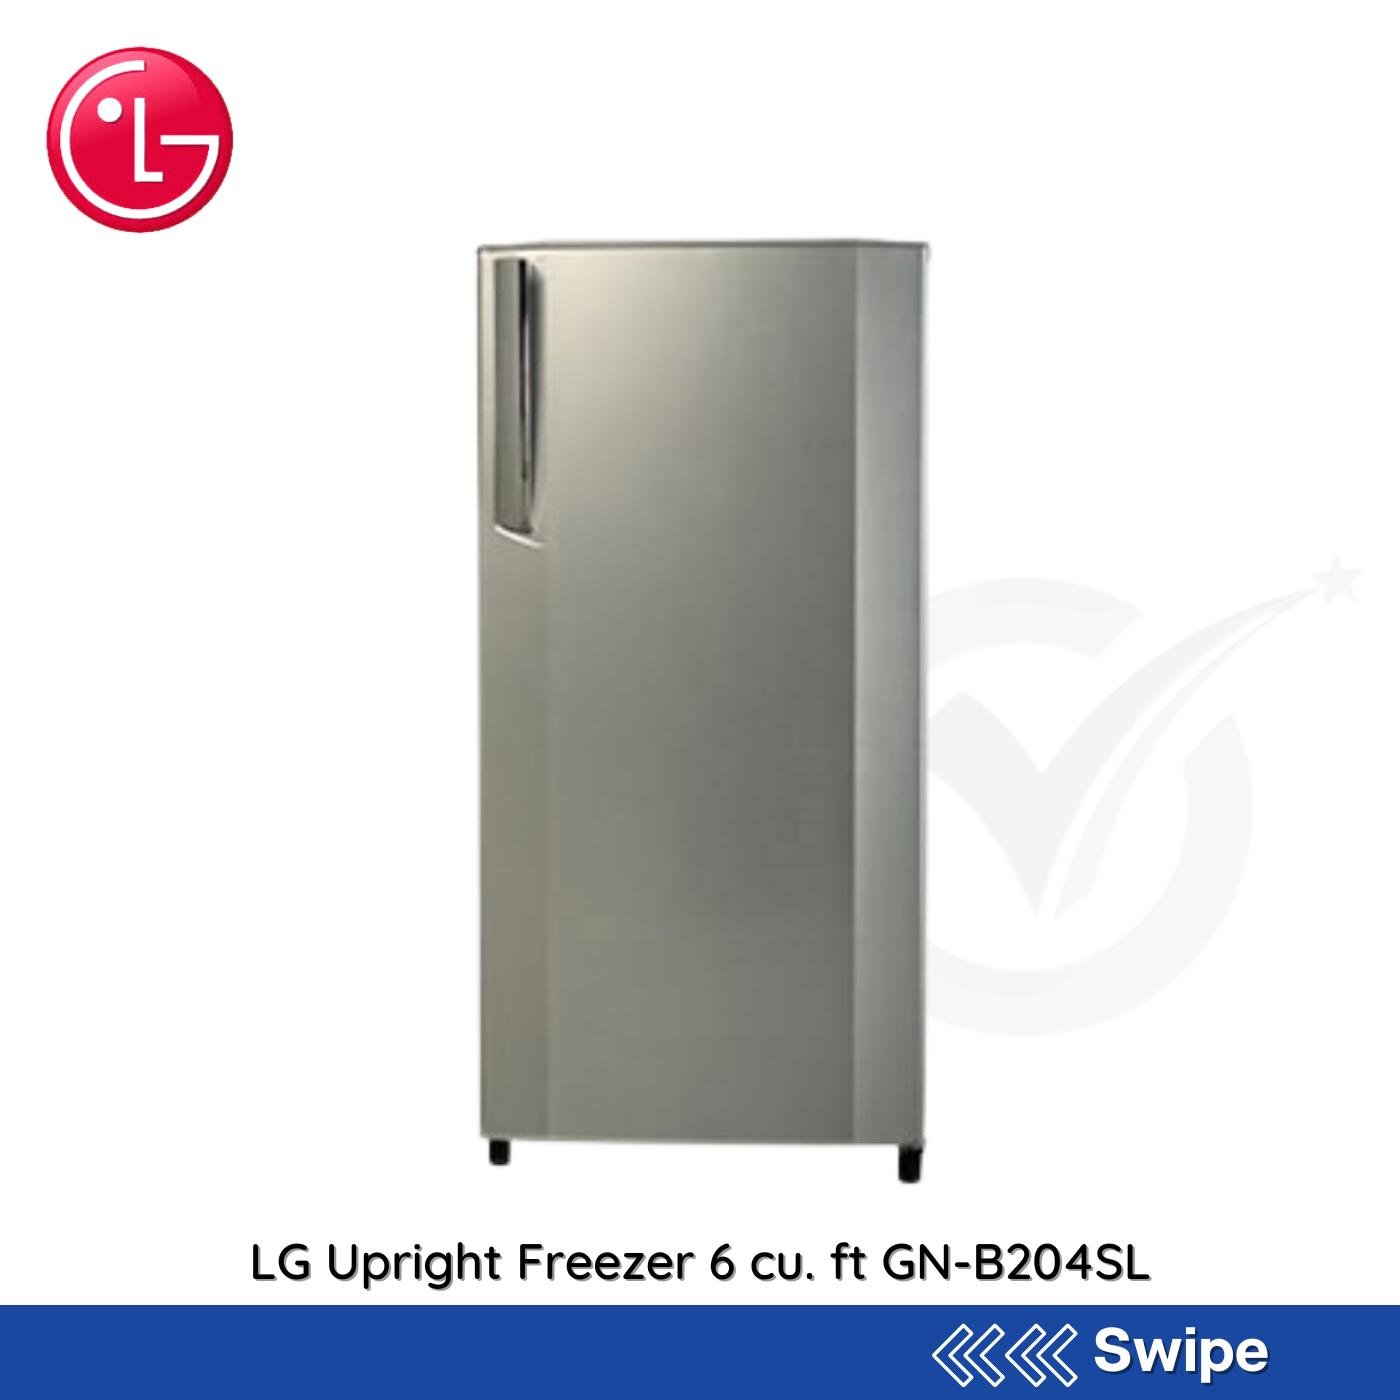 LG Upright Freezer 6 cu. ft GN-B204SL